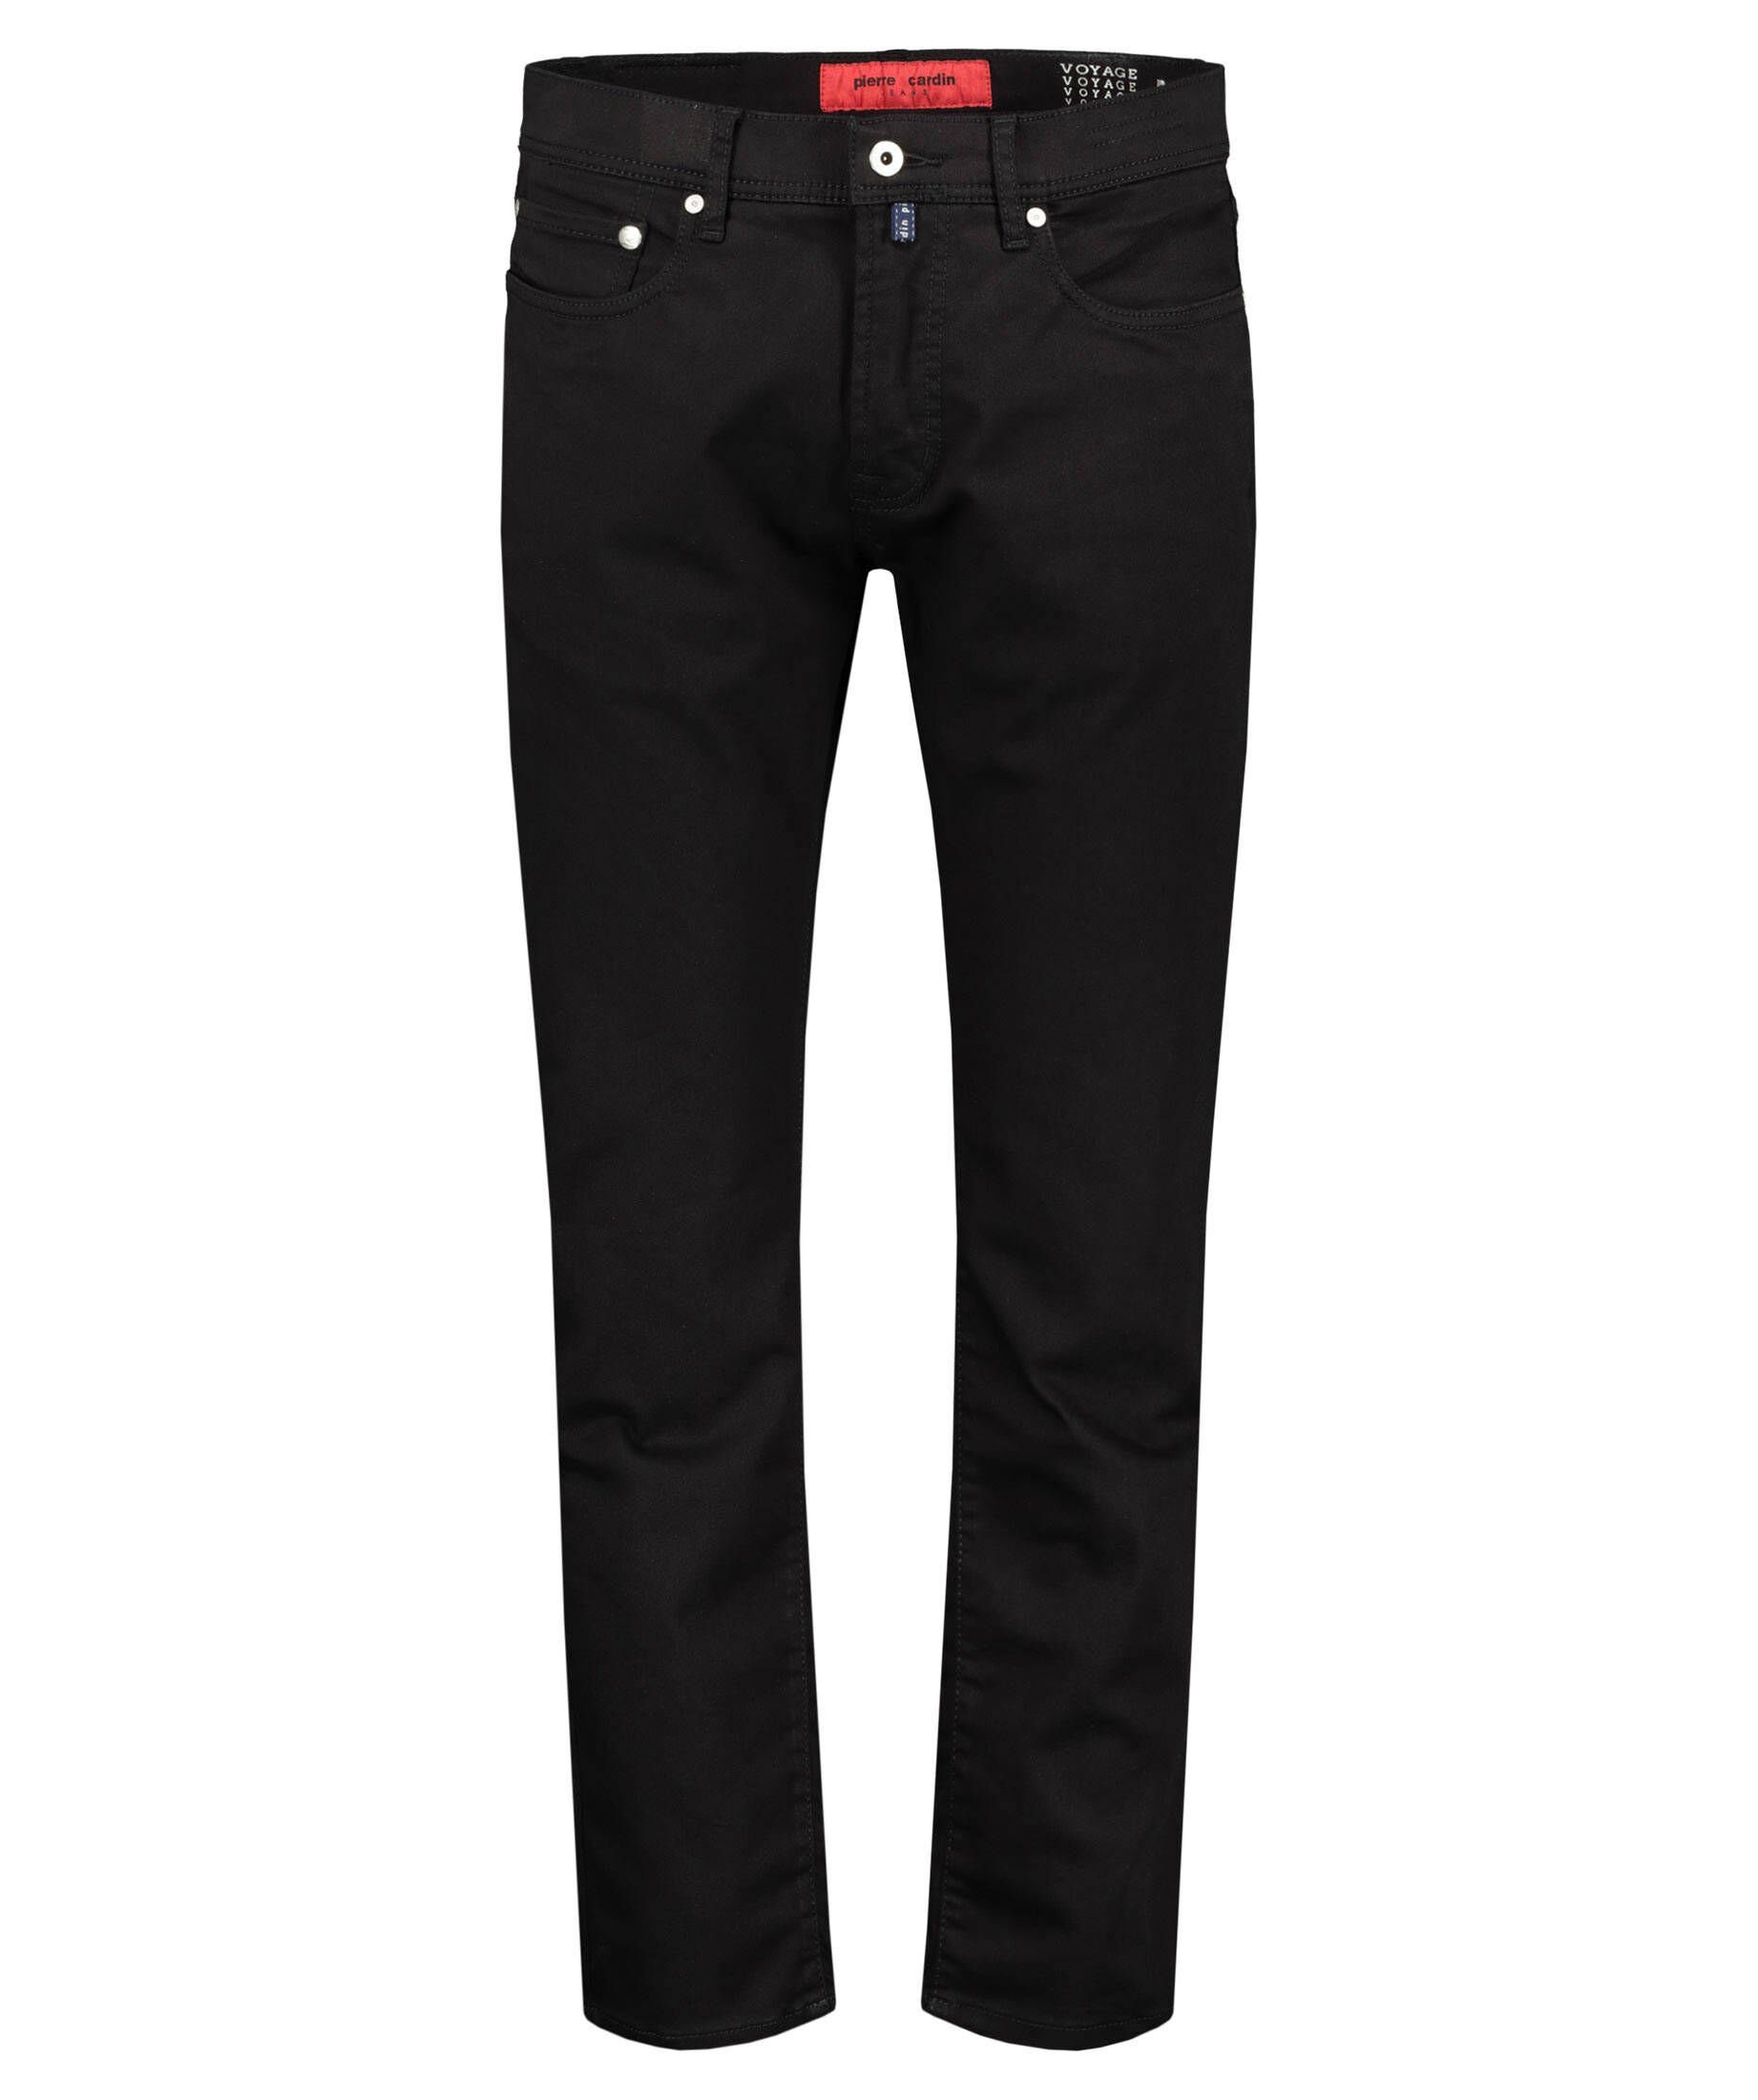 Pierre Cardin Jeans online kaufen | OTTO